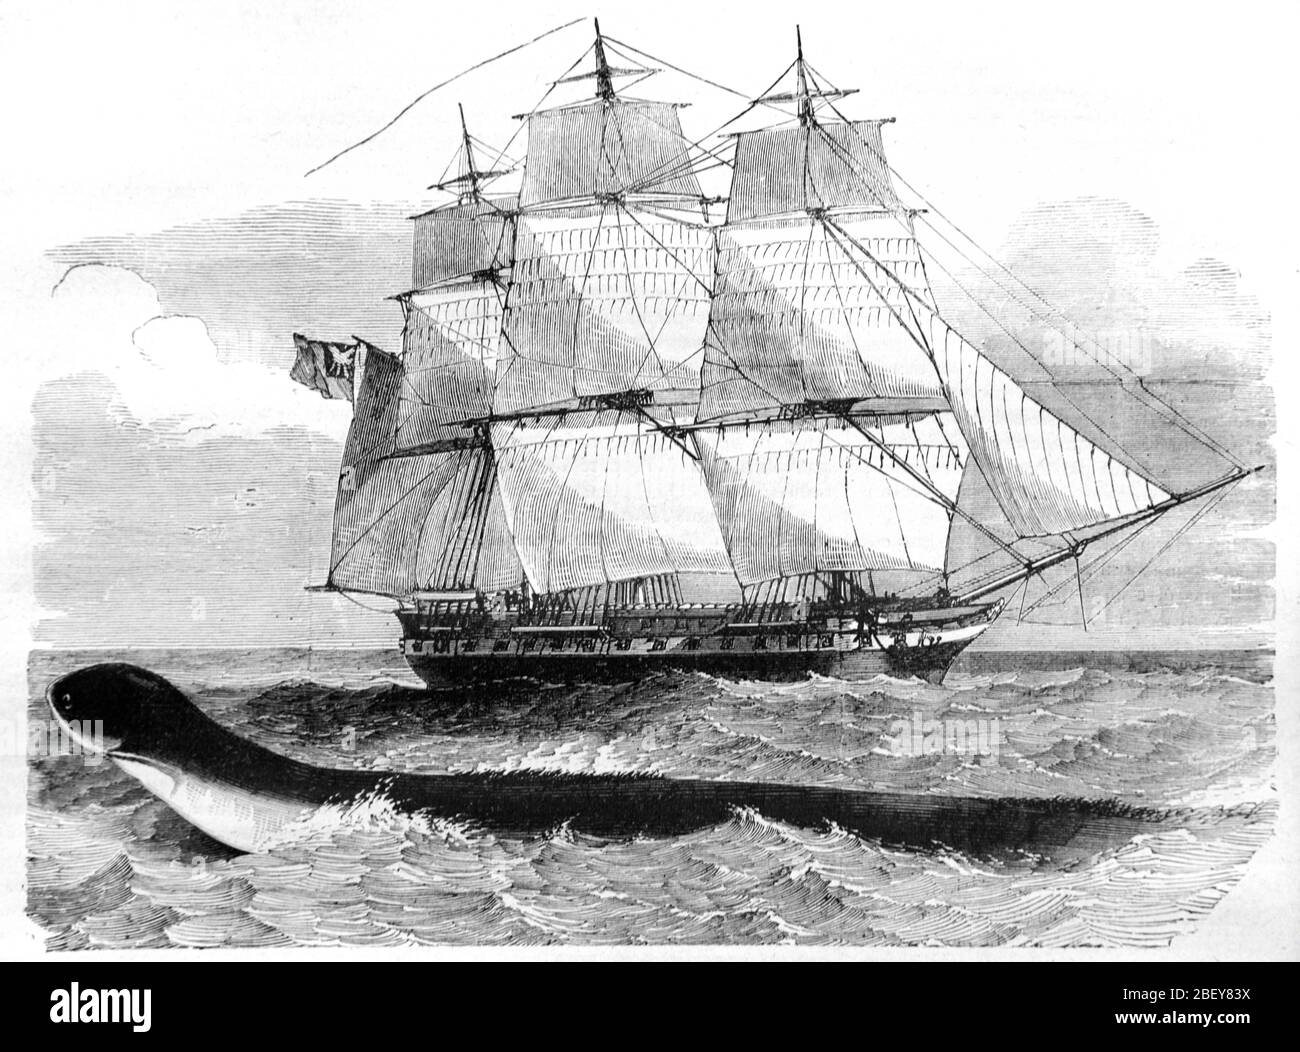 La Serpente Gigante del Mar visto por primera vez desde el buque de guerra británico HMS Daedalus (1826) en 1848 por el Capitán McQuhae y la tripulación del buque entre el Cabo de la buena Esperanza y Saint Helana. La Creatura del Mar ha sido identificada como una posible ballena sei de barón. Ilustración o grabado Vintage o Old 1888 Foto de stock